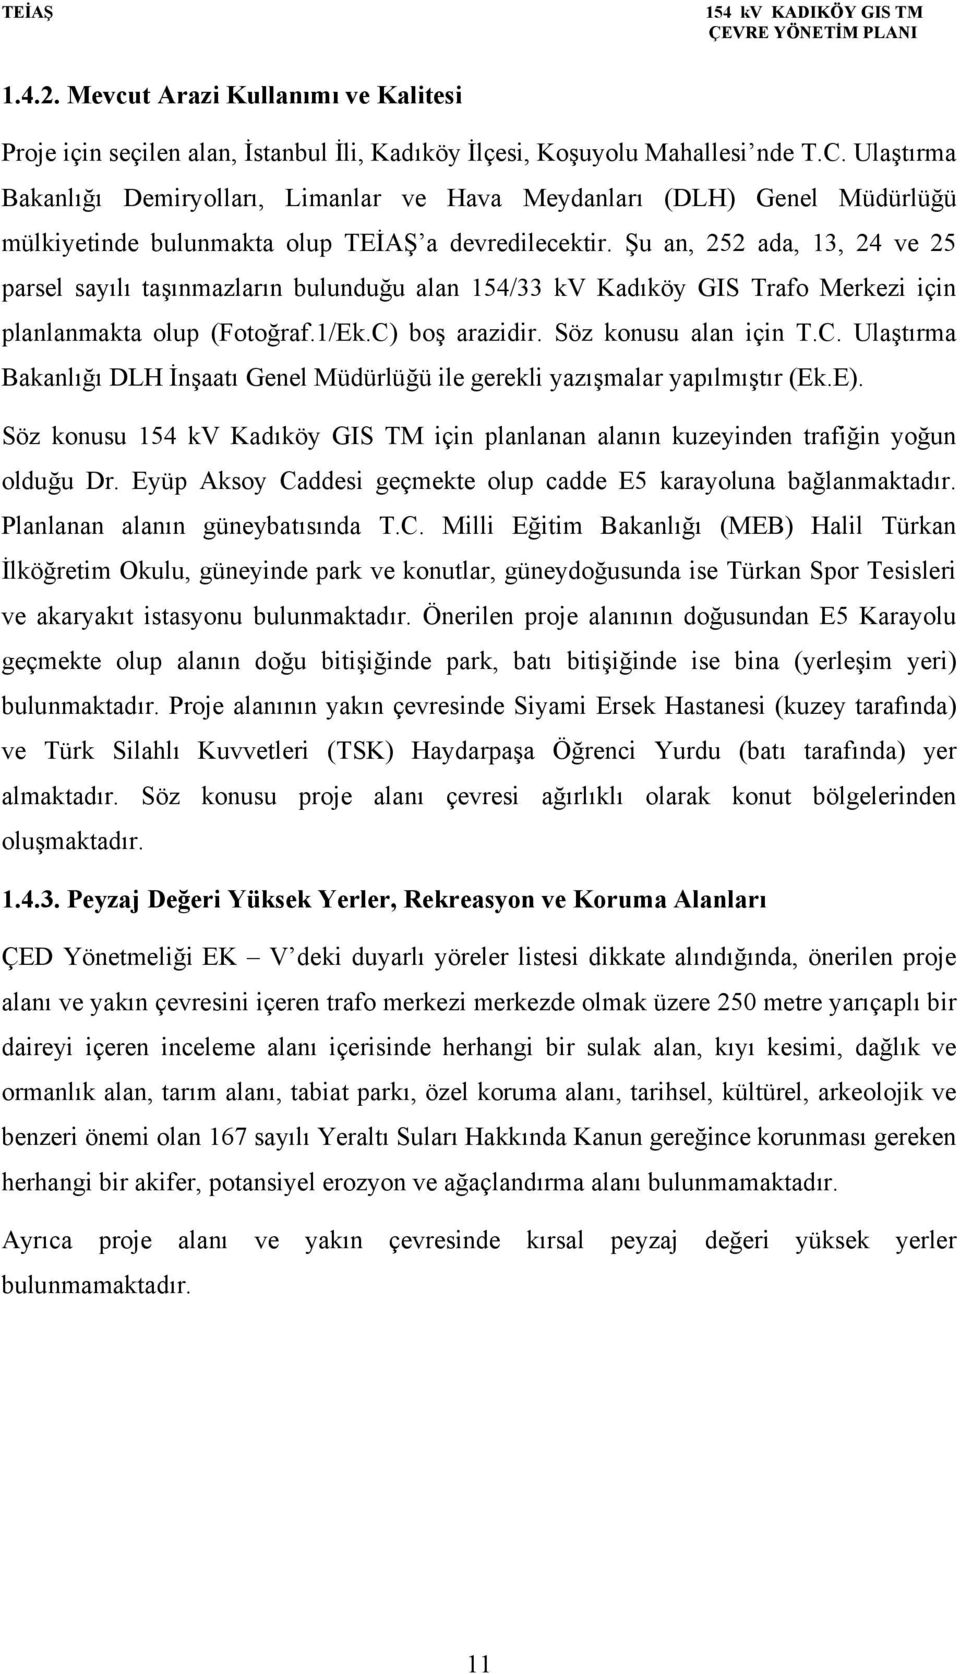 Şu an, 252 ada, 13, 24 ve 25 parsel sayılı taşınmazların bulunduğu alan 154/33 kv Kadıköy GIS Trafo Merkezi için planlanmakta olup (Fotoğraf.1/Ek.C)